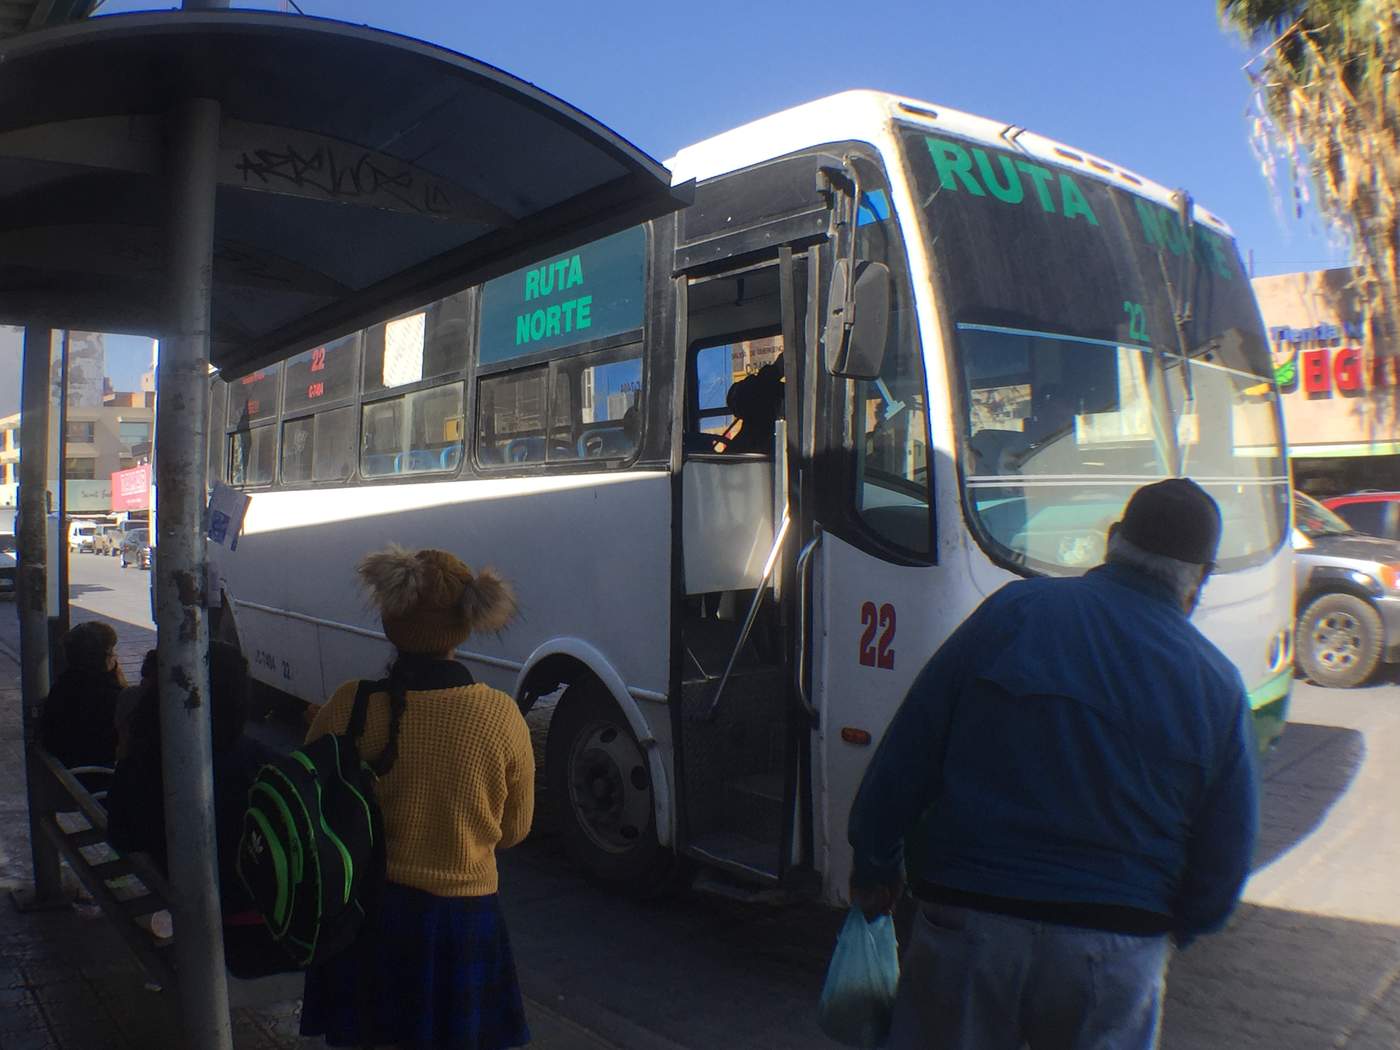 Fueron los concesionarios del transporte urbano colectivo los que solicitaron a los integrantes de la Comisión de Movilidad del Ayuntamiento de Torreón un aumento a las tarifas del servicio o subsidios para enfrentar el alza en insumos. (EL SIGLO DE TORREÓN)